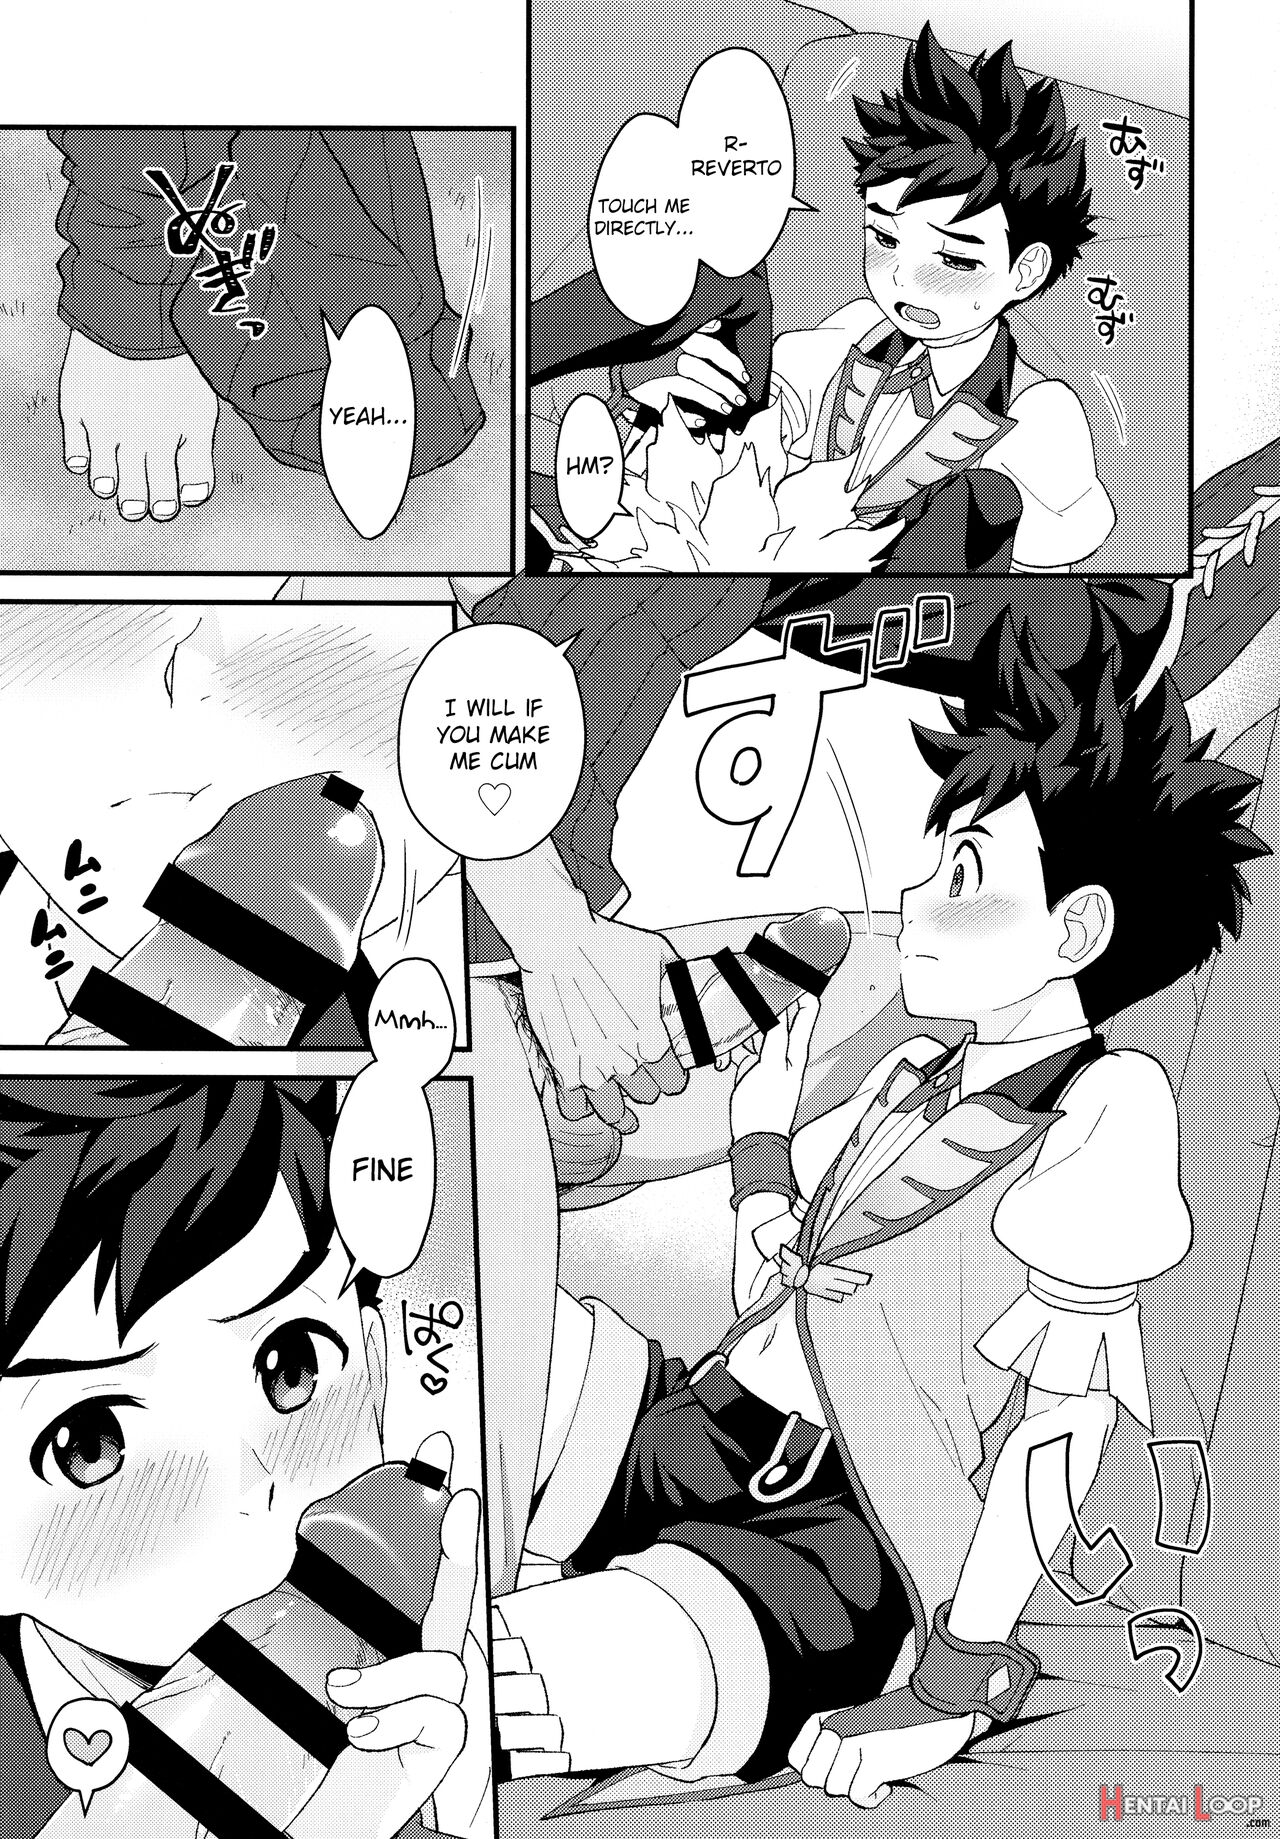 Lute-kun To Riverto-san No Nichijou 2 page 10